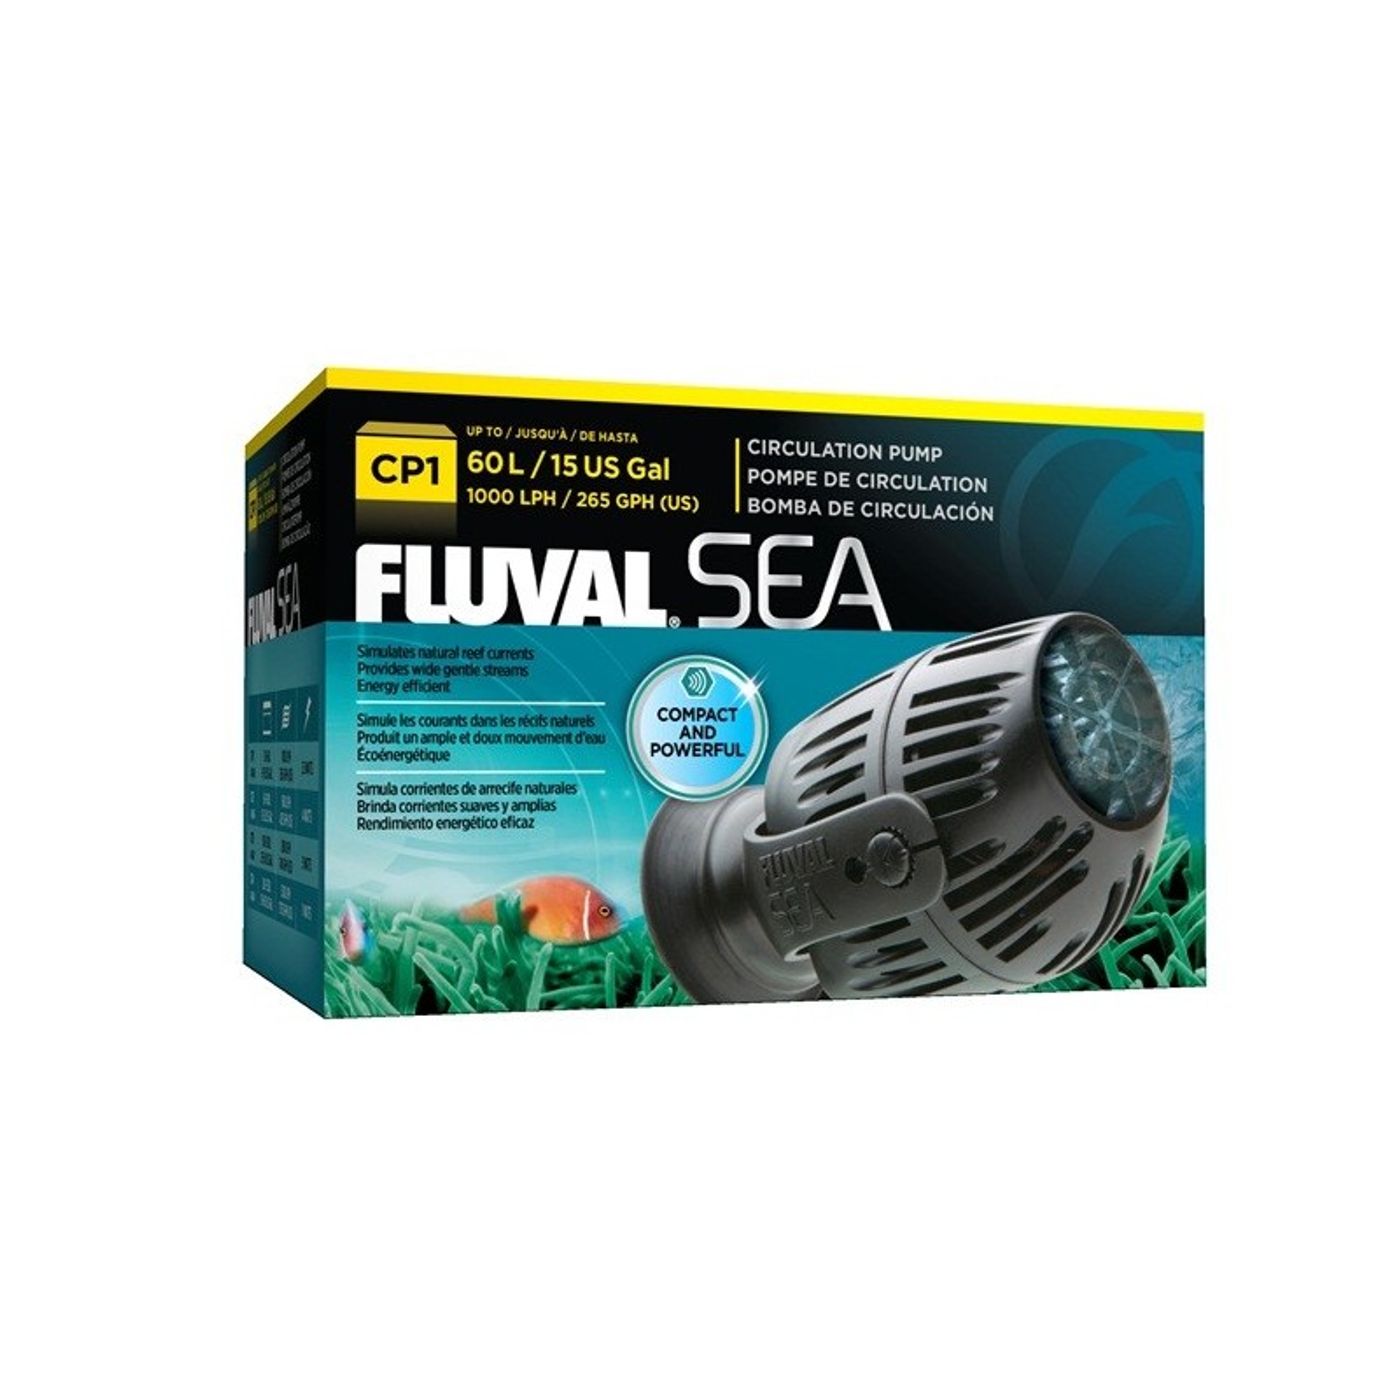 FLUVAL-Sea-Bomba-de-Circulacao-CP1